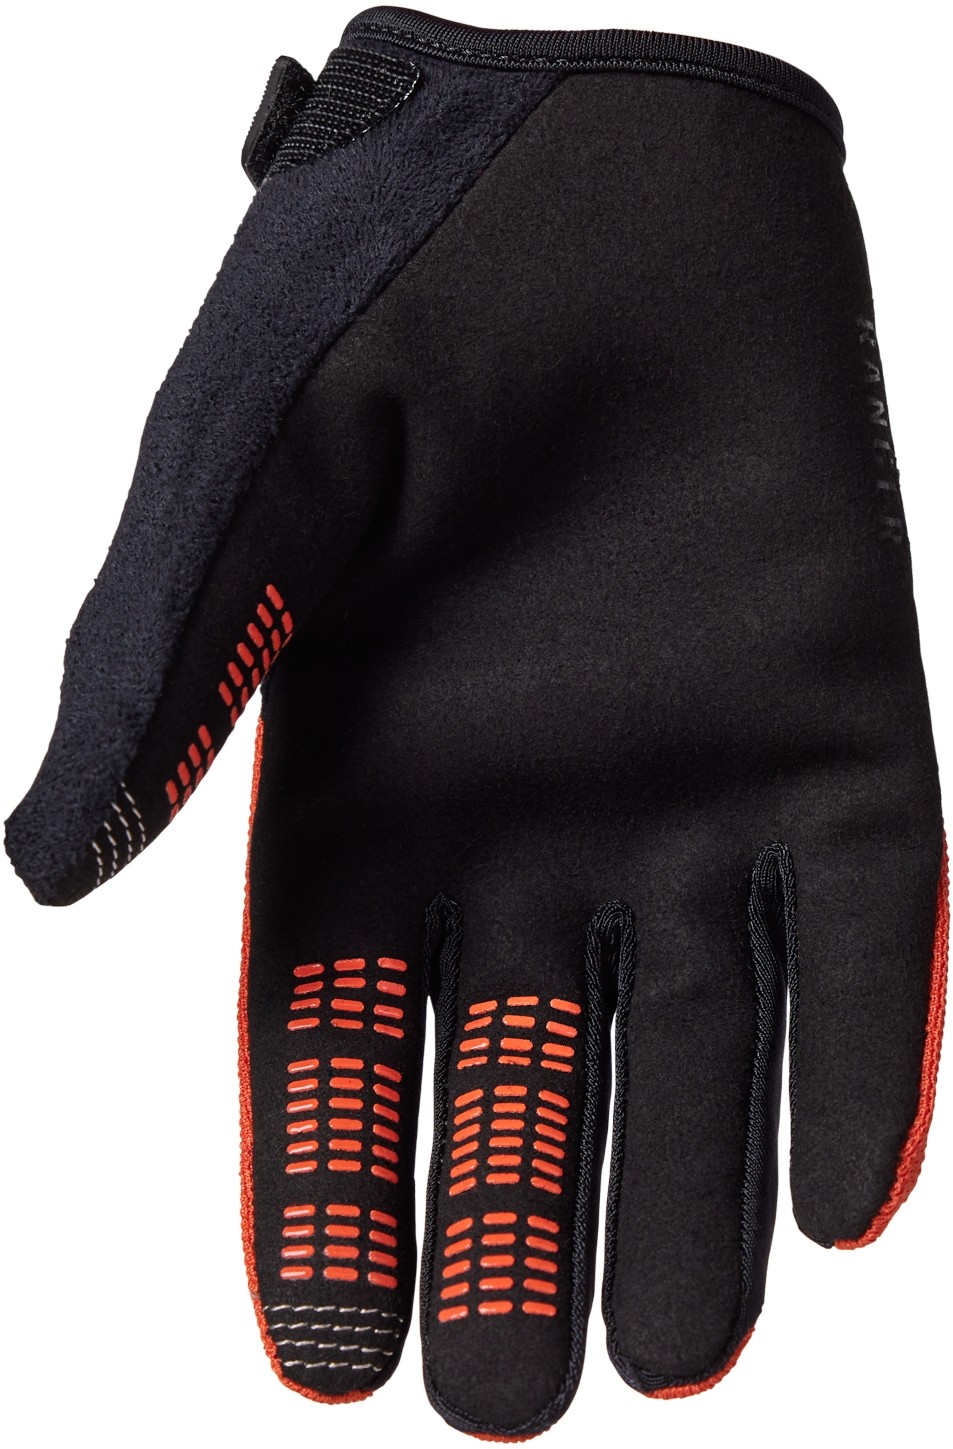 Ranger Youth Long Finger MTB Gloves image 1